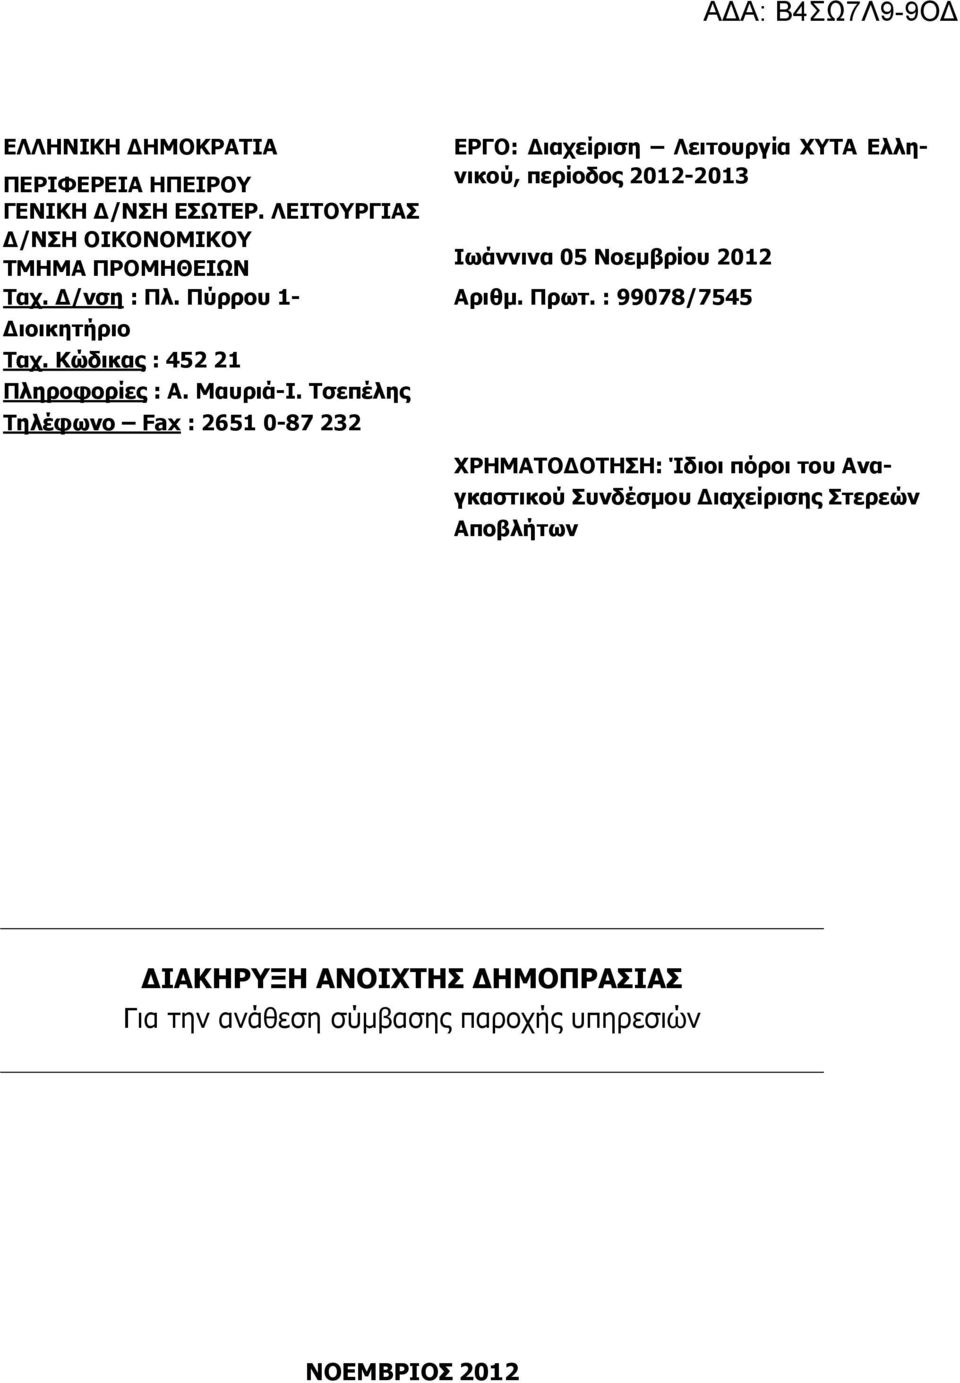 Τσεπέλης Τηλέφωνο Fax : 2651 0-87 232 ΕΡΓΟ: ιαχείριση Λειτουργία ΧΥΤΑ Ελληνικού, περίοδος 2012-2013 Ιωάννινα 05 Νοεµβρίου 2012